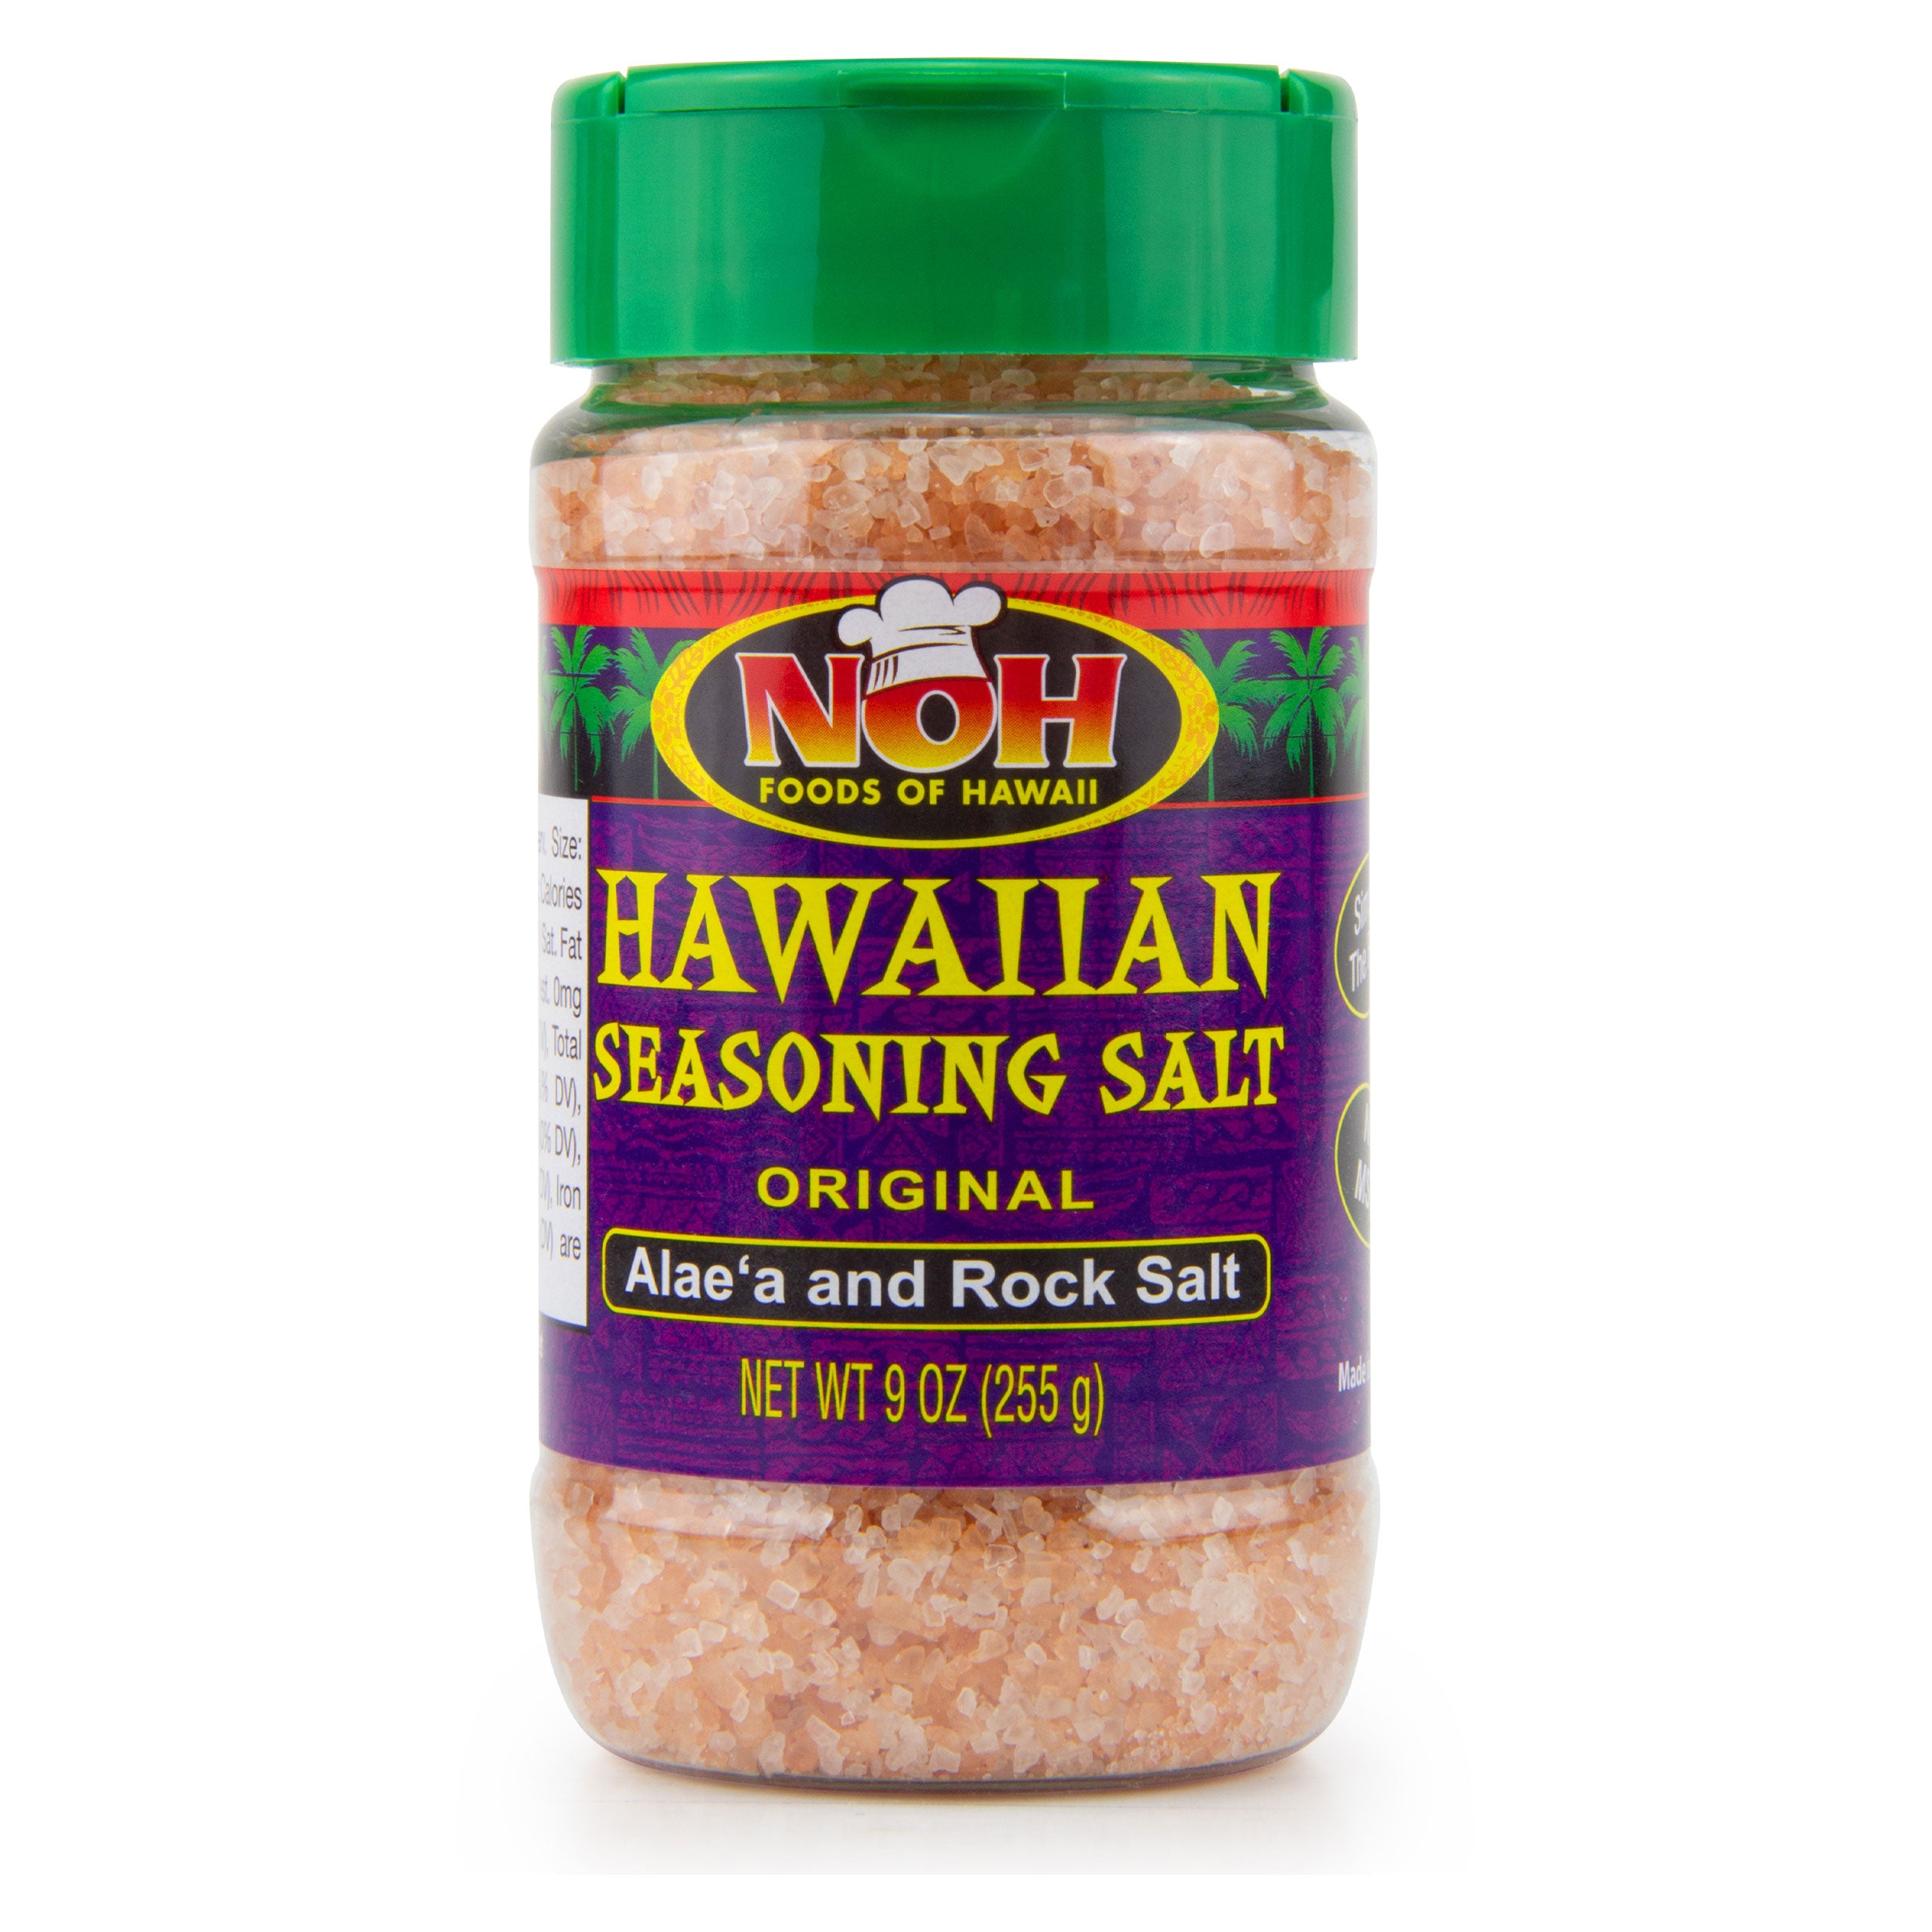 Noh Foods Of Hawaii Seasoning Salt, All Purpose, Hawaiian - 8 oz